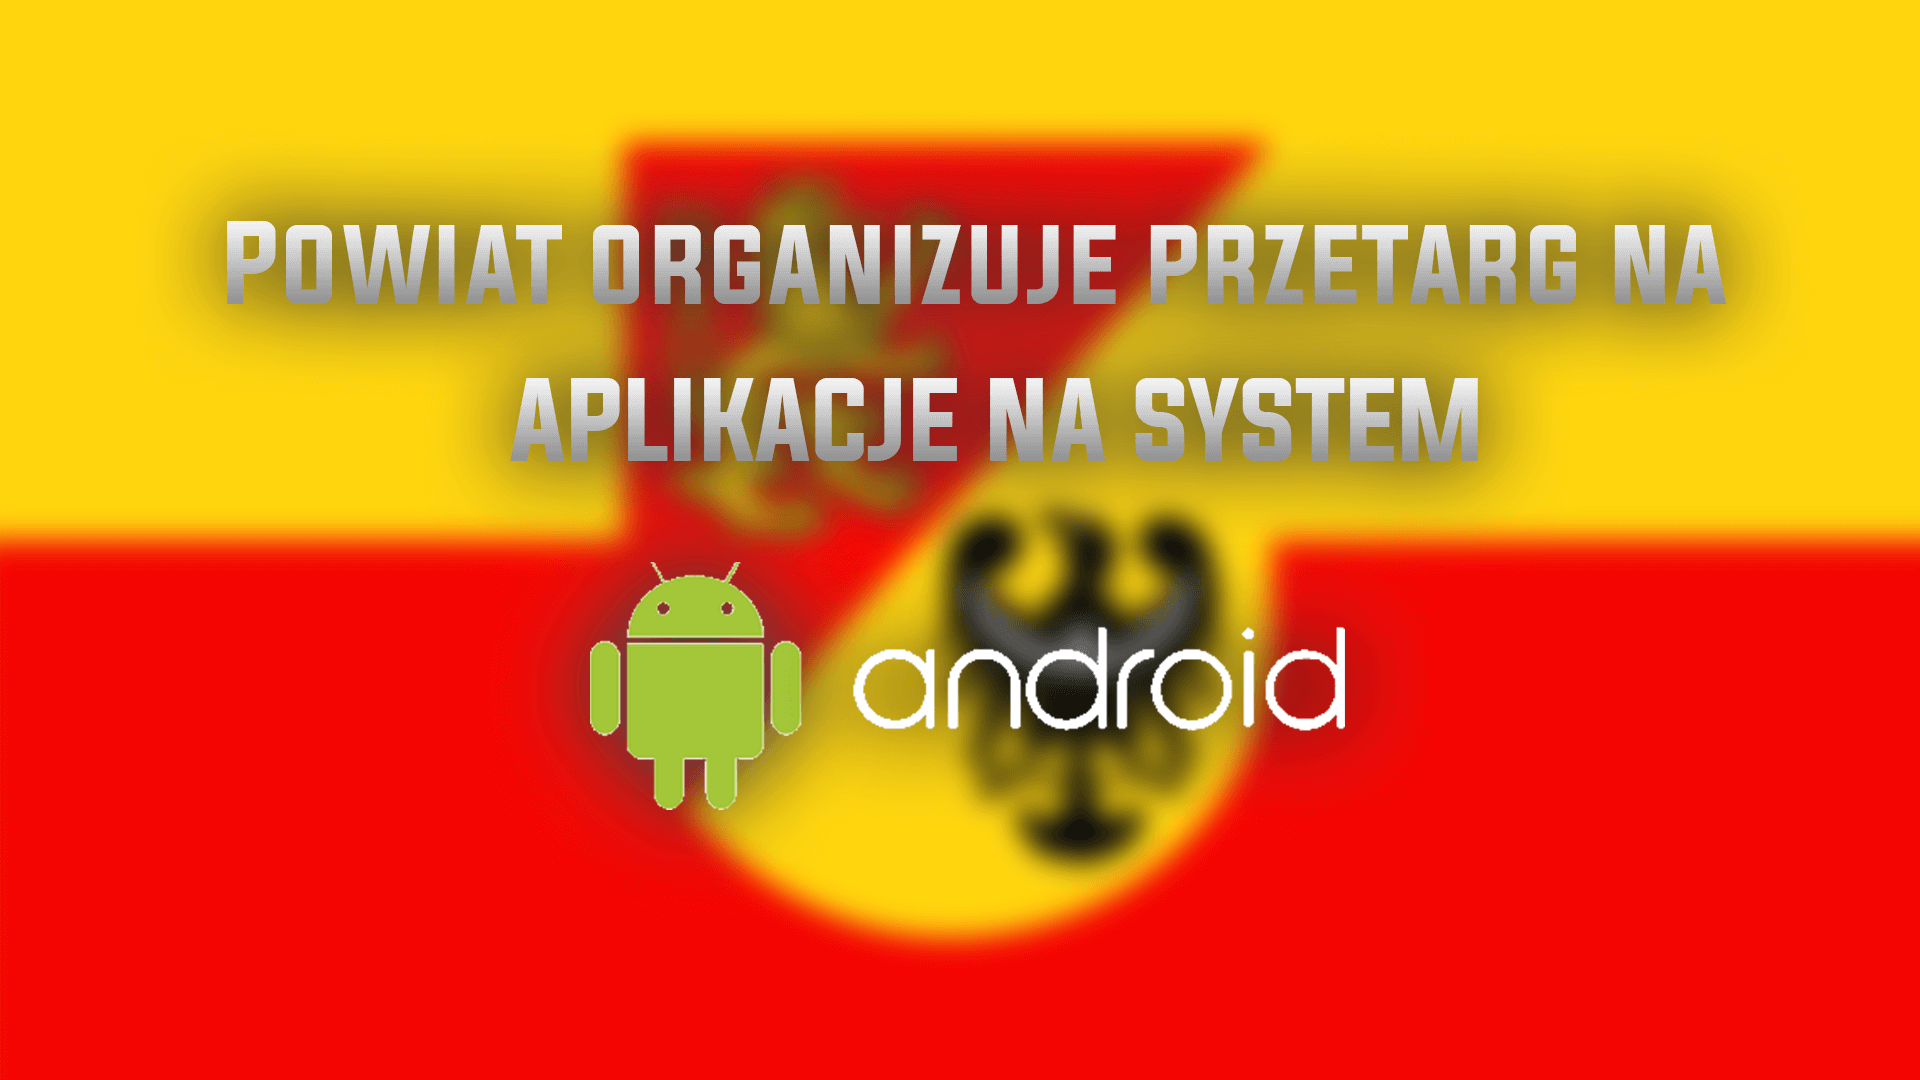  Powiat Lwówecki organizuje przetarg na: Aplikację na Androida